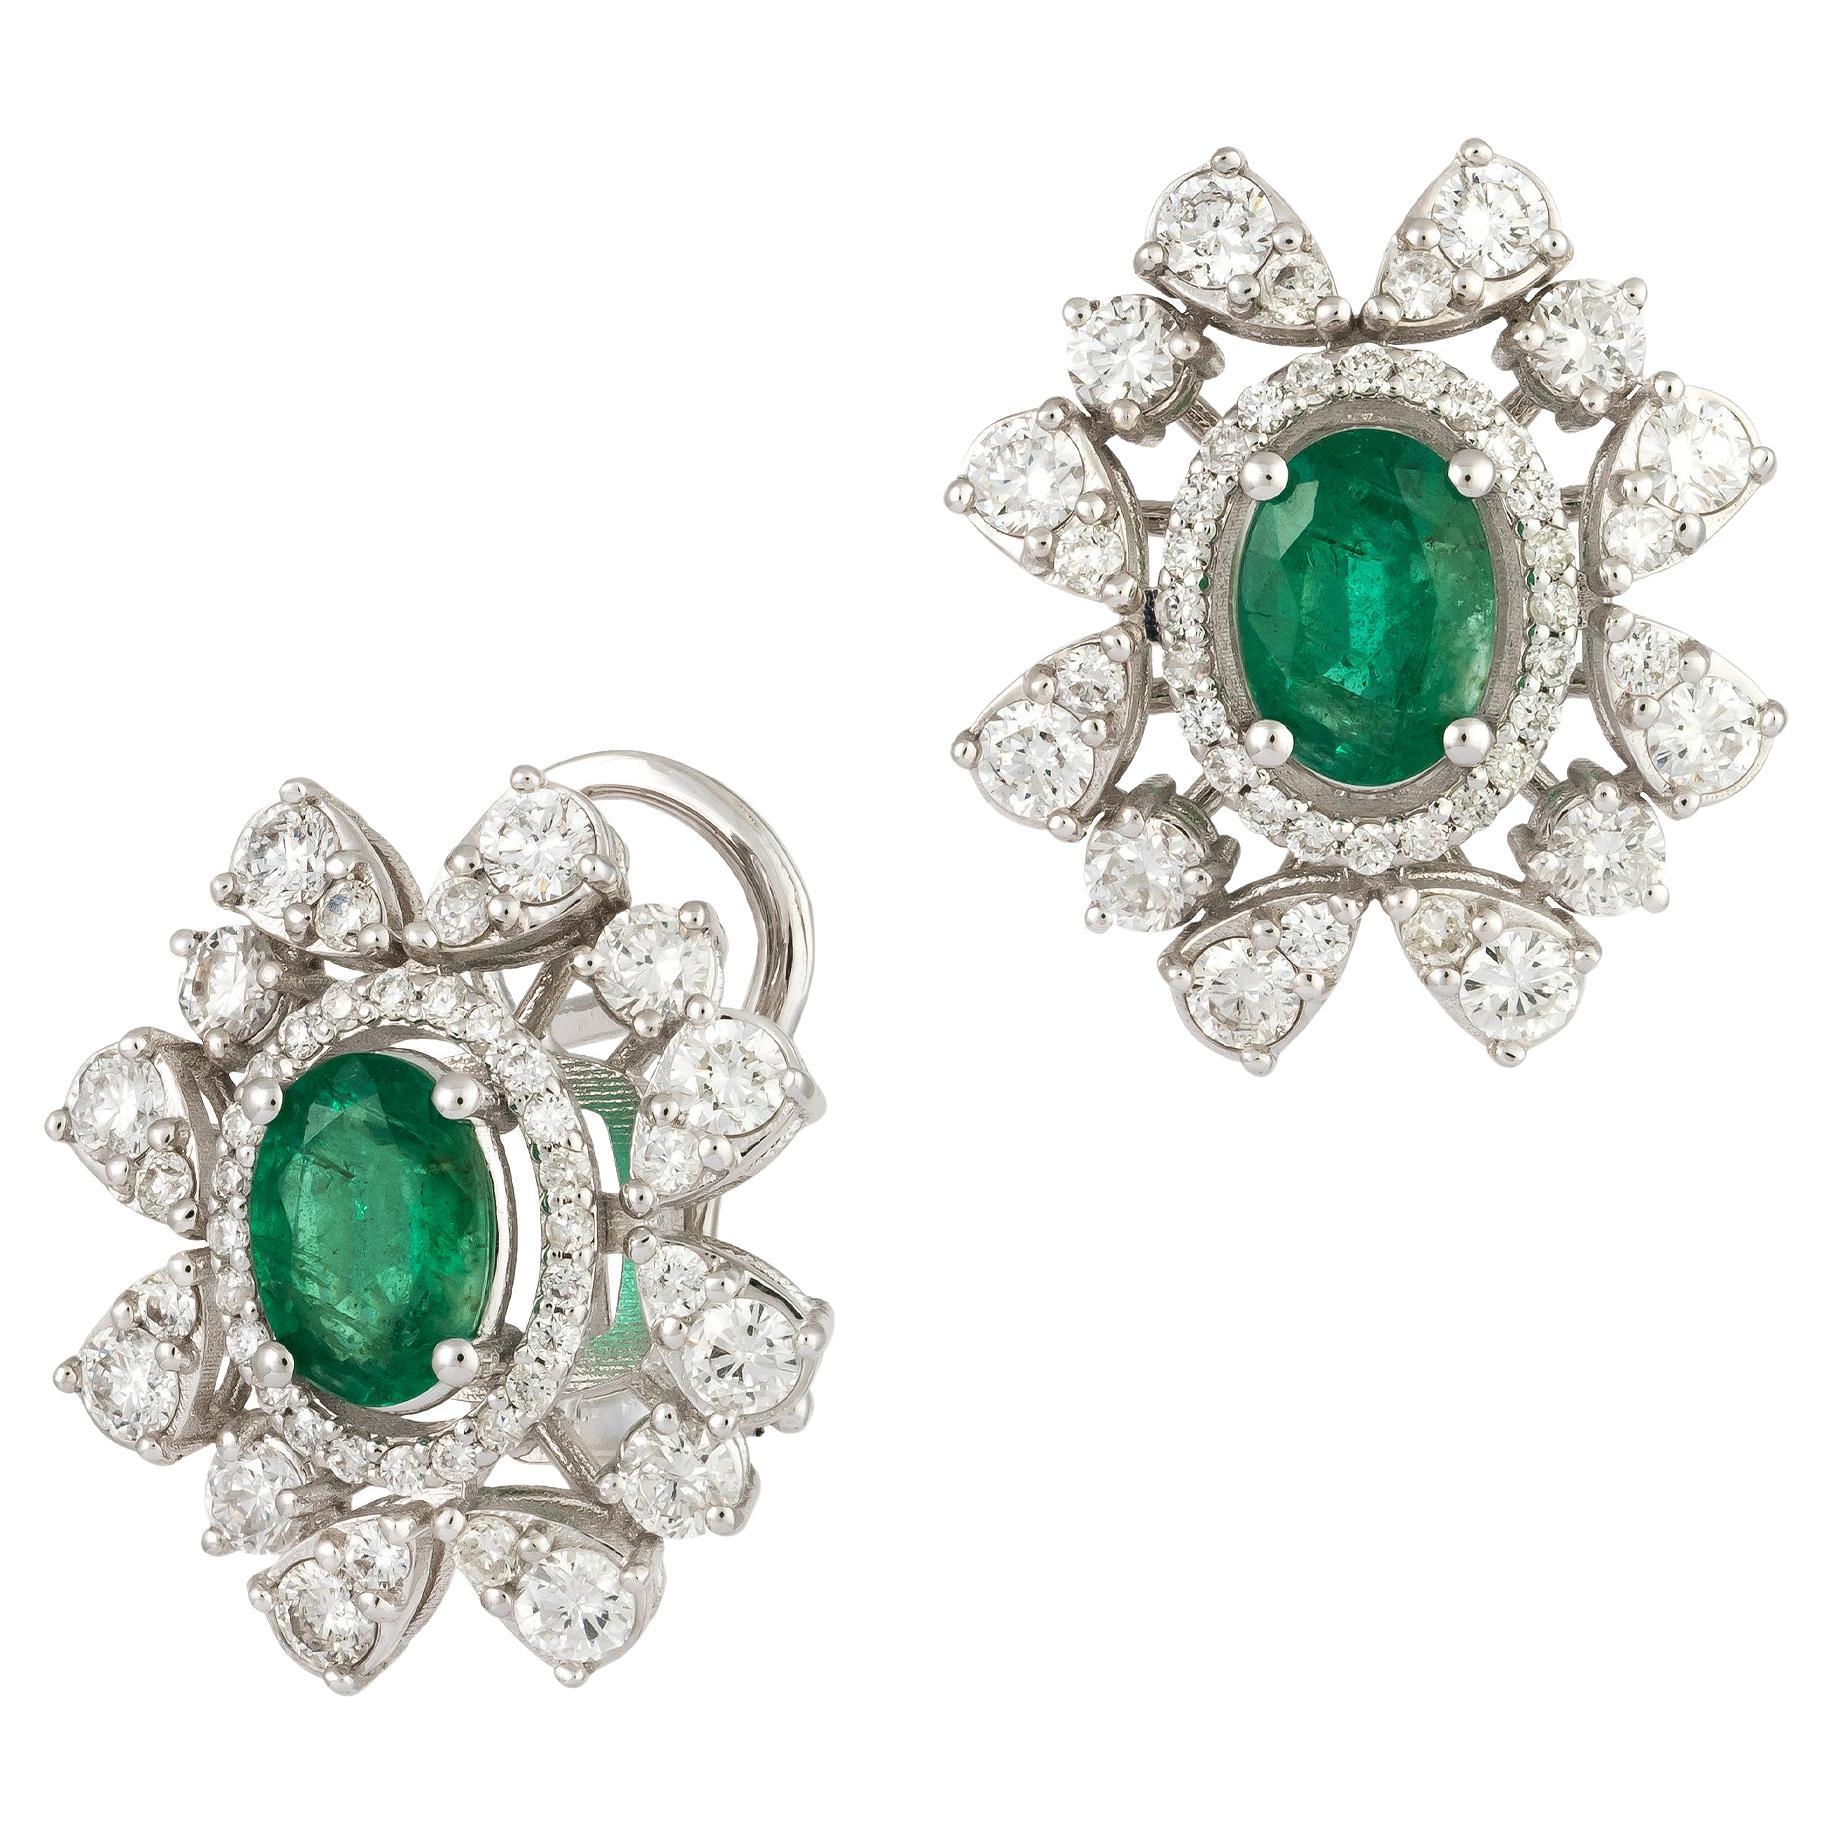 Modern White Gold 18K Earrings Emerald Diamond For Her For Sale